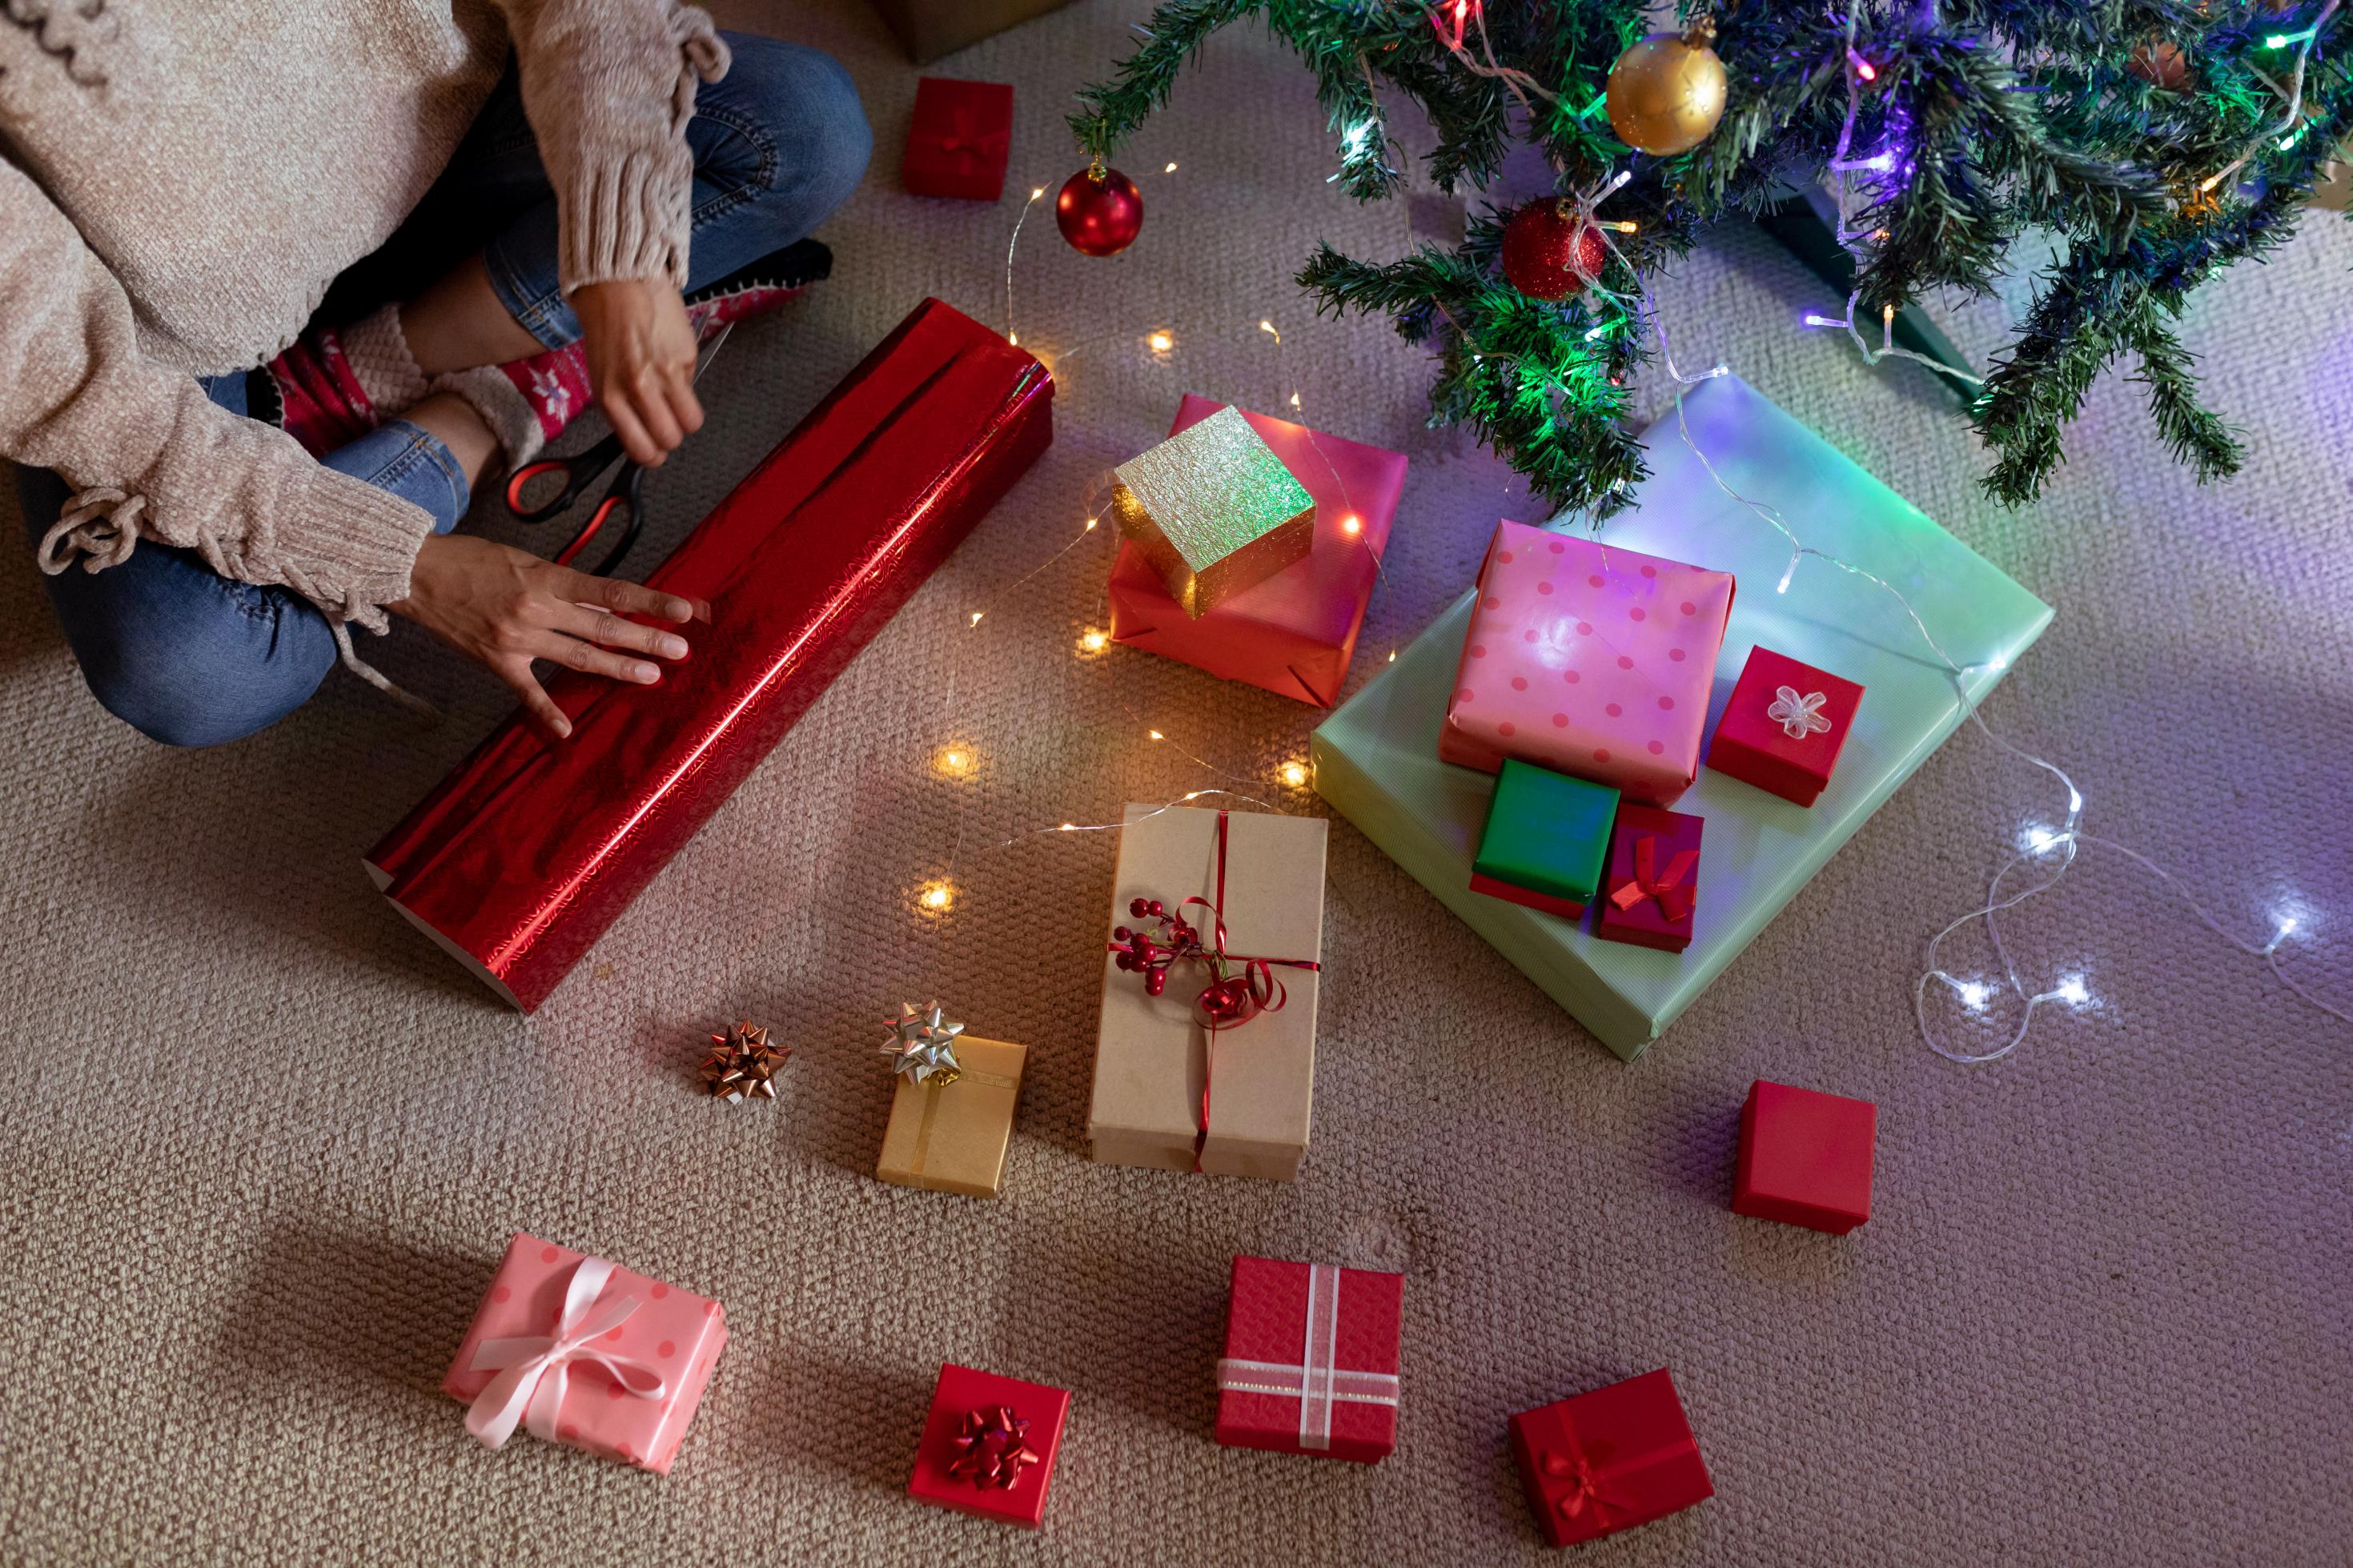 Eine Frau sitzt im Schneidersitz auf dem Boden und verpackt ein Geschenk in rotes Geschenkpapier. Vor ihr auf dem Boden liegen bereits fertig verpackte Geschenke.